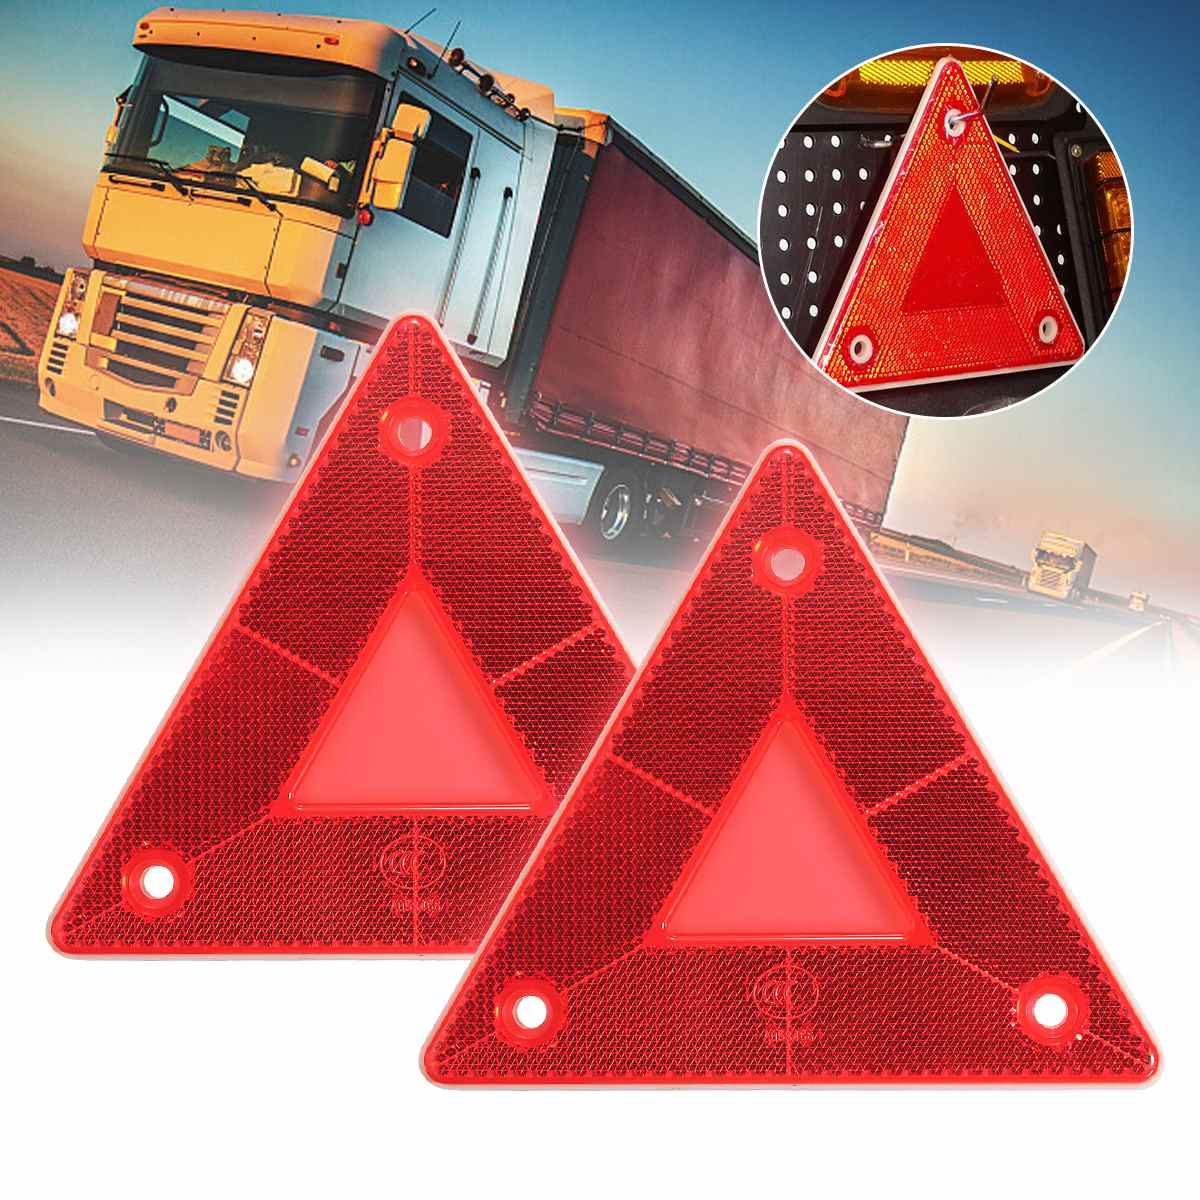 2 Stuks Driehoek Rode Reflecterende Reflectoren Auto Nood Afbraak Waarschuwing Voor Auto Truck Van Trailers Caravans Vrachtwagen Bus